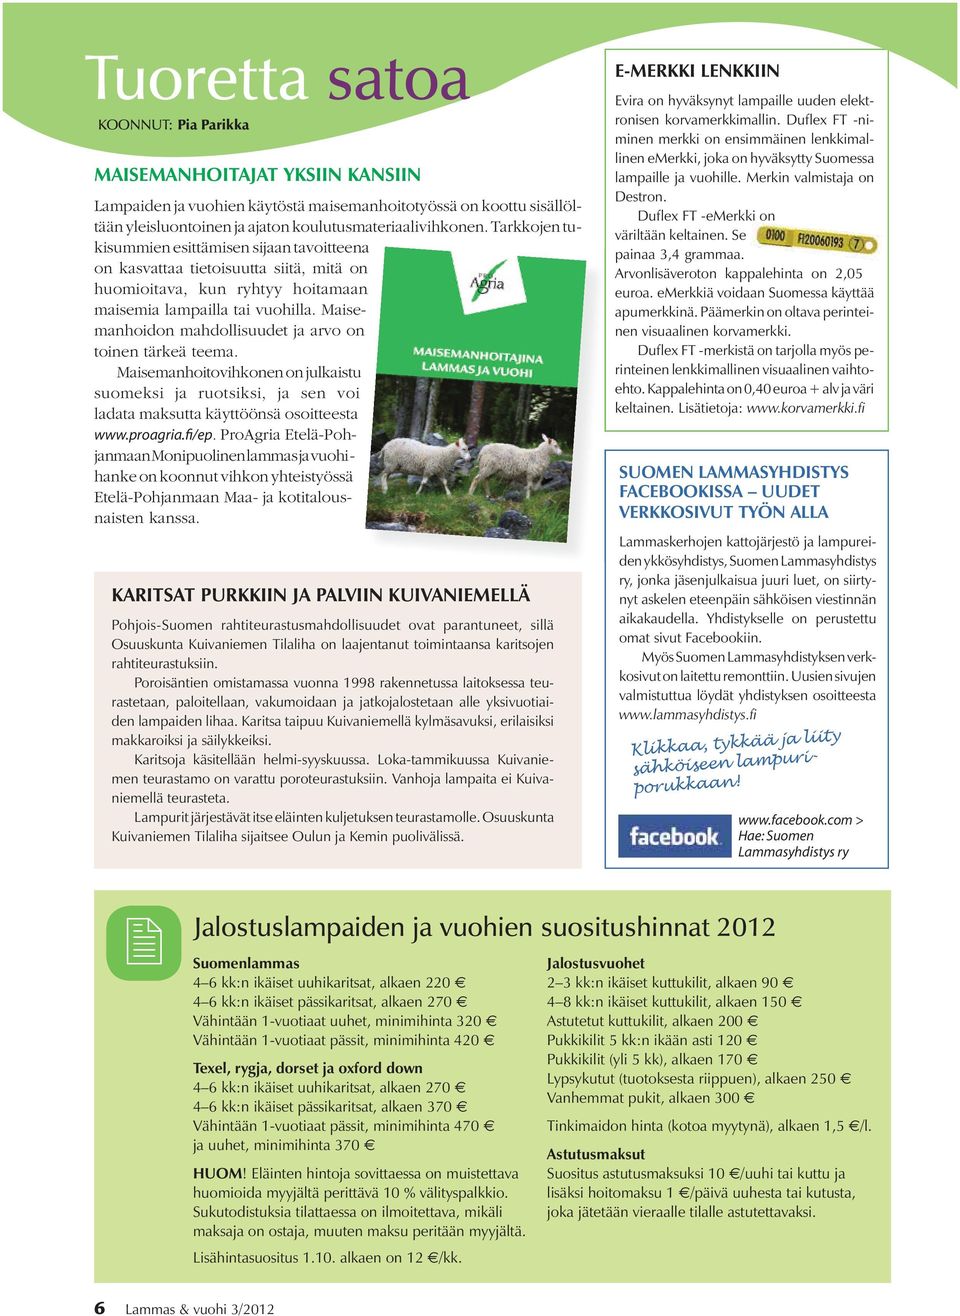 Maisemanhoidon mahdollisuudet ja arvo on toinen tärkeä teema. Maisemanhoitovihkonen on julkaistu suomeksi ja ruotsiksi, ja sen voi ladata maksutta käyttöönsä osoitteesta www.proagria.fi/ep.